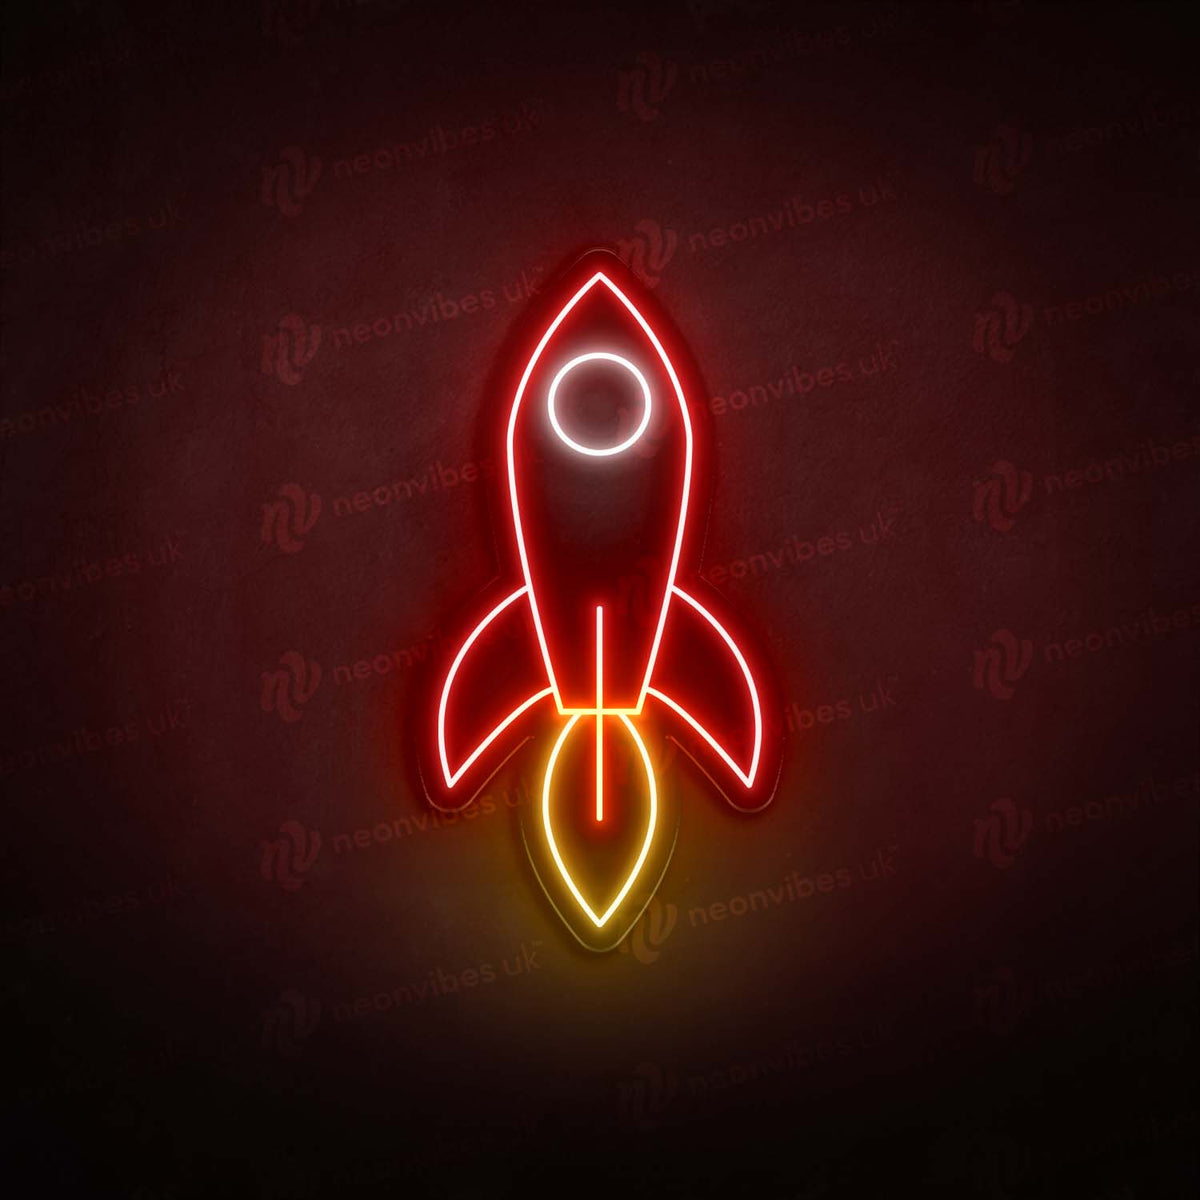 Rocket neon sign